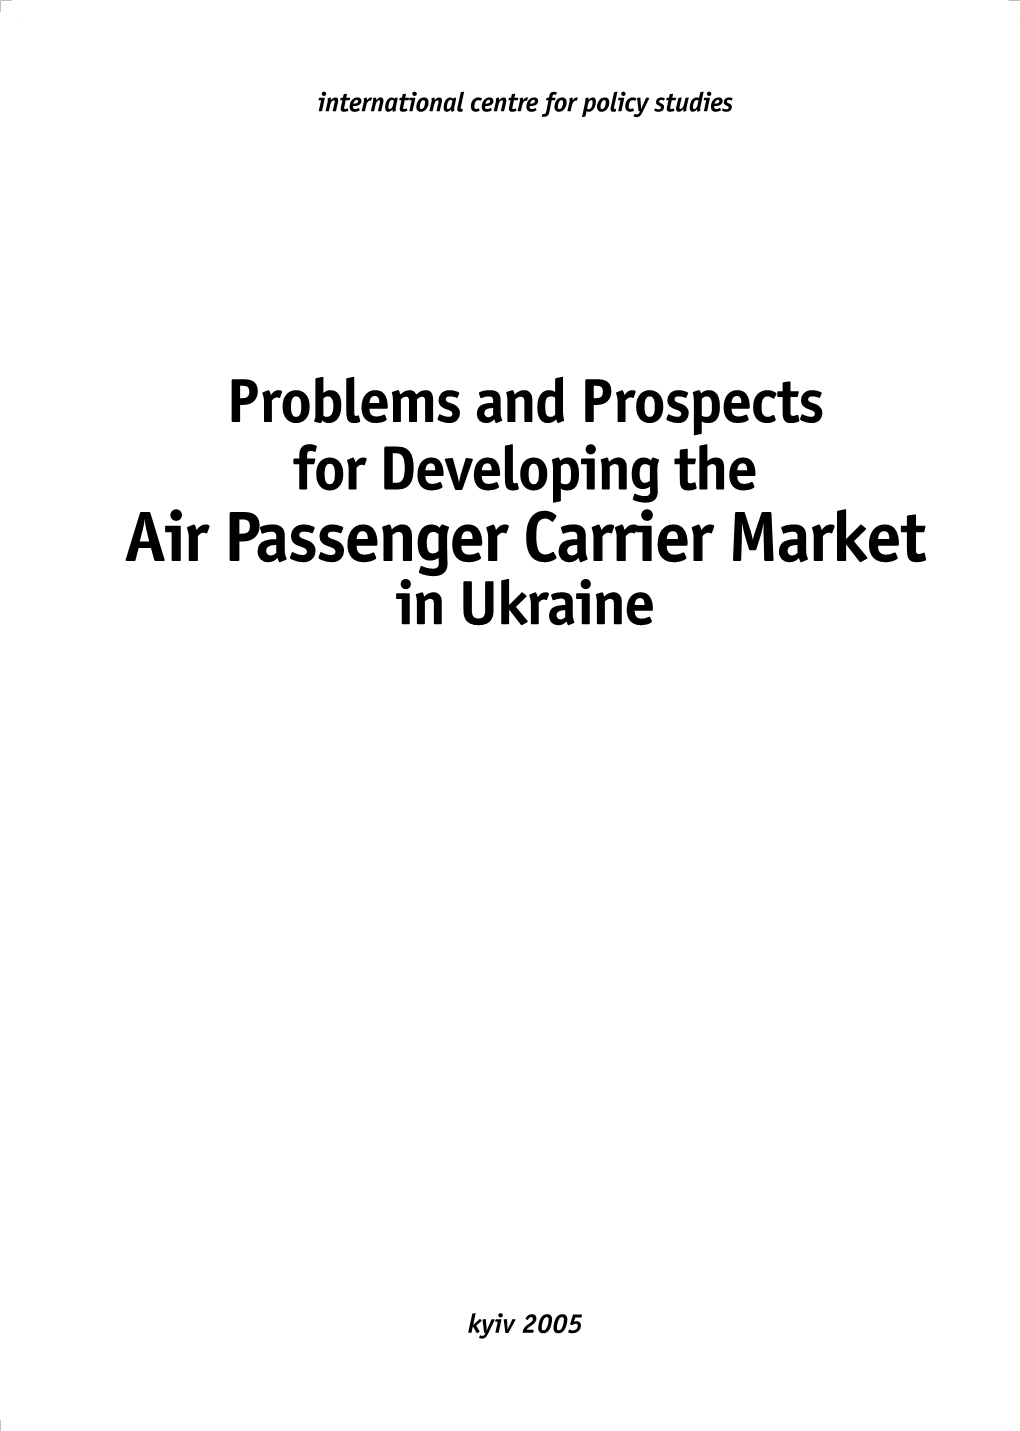 Air Passenger Carrier Market in Ukraine